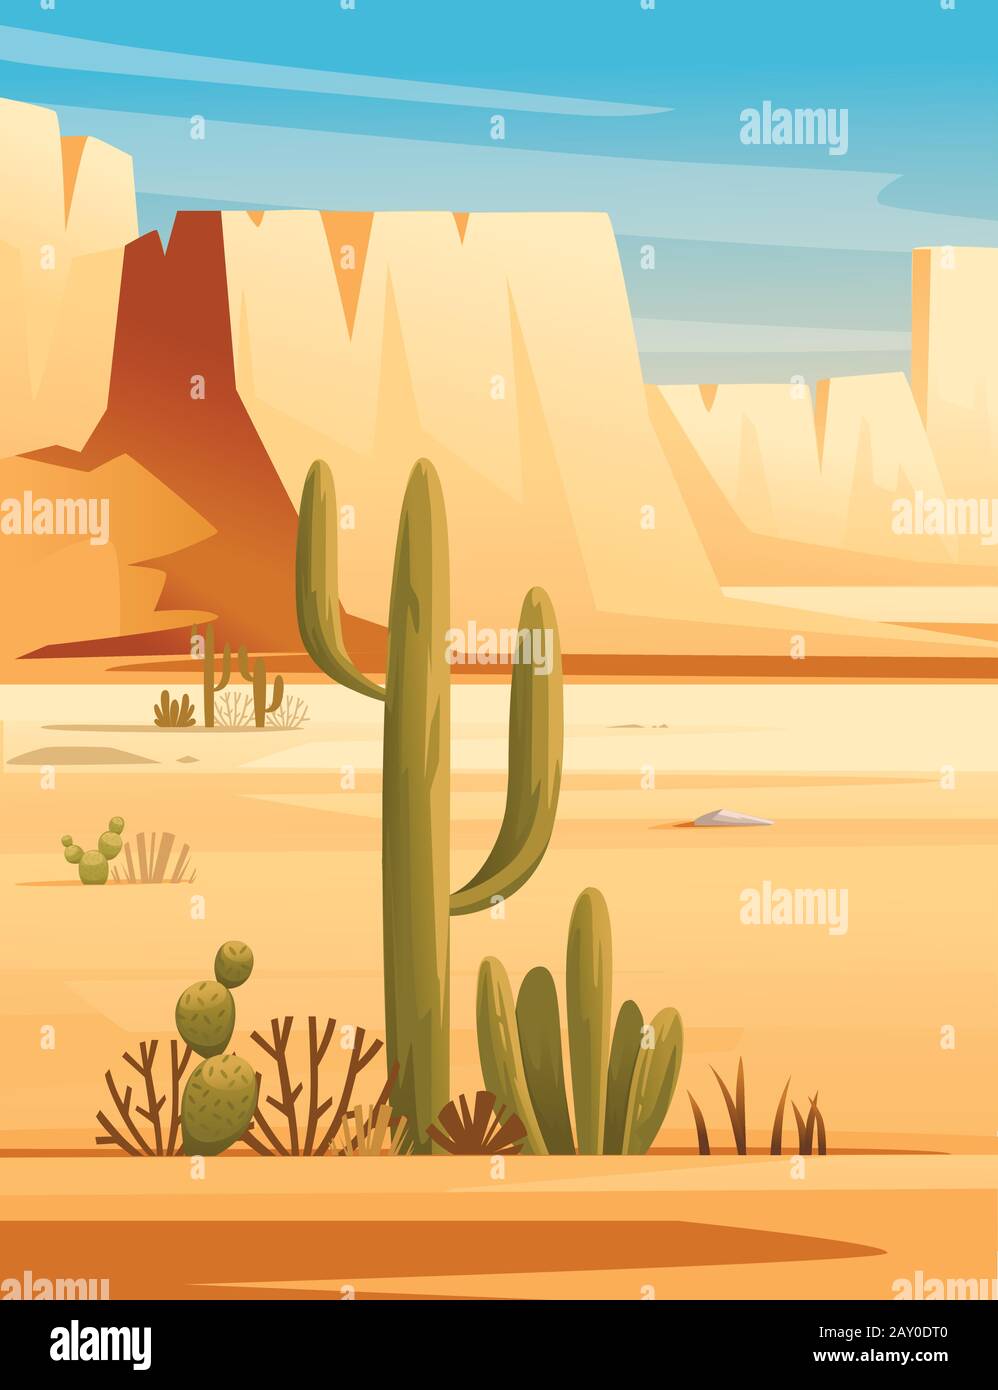 Désert paysage de désert de pierre avec plantes et rochers soleil jour ciel bleu plate illustration verticale. Illustration de Vecteur